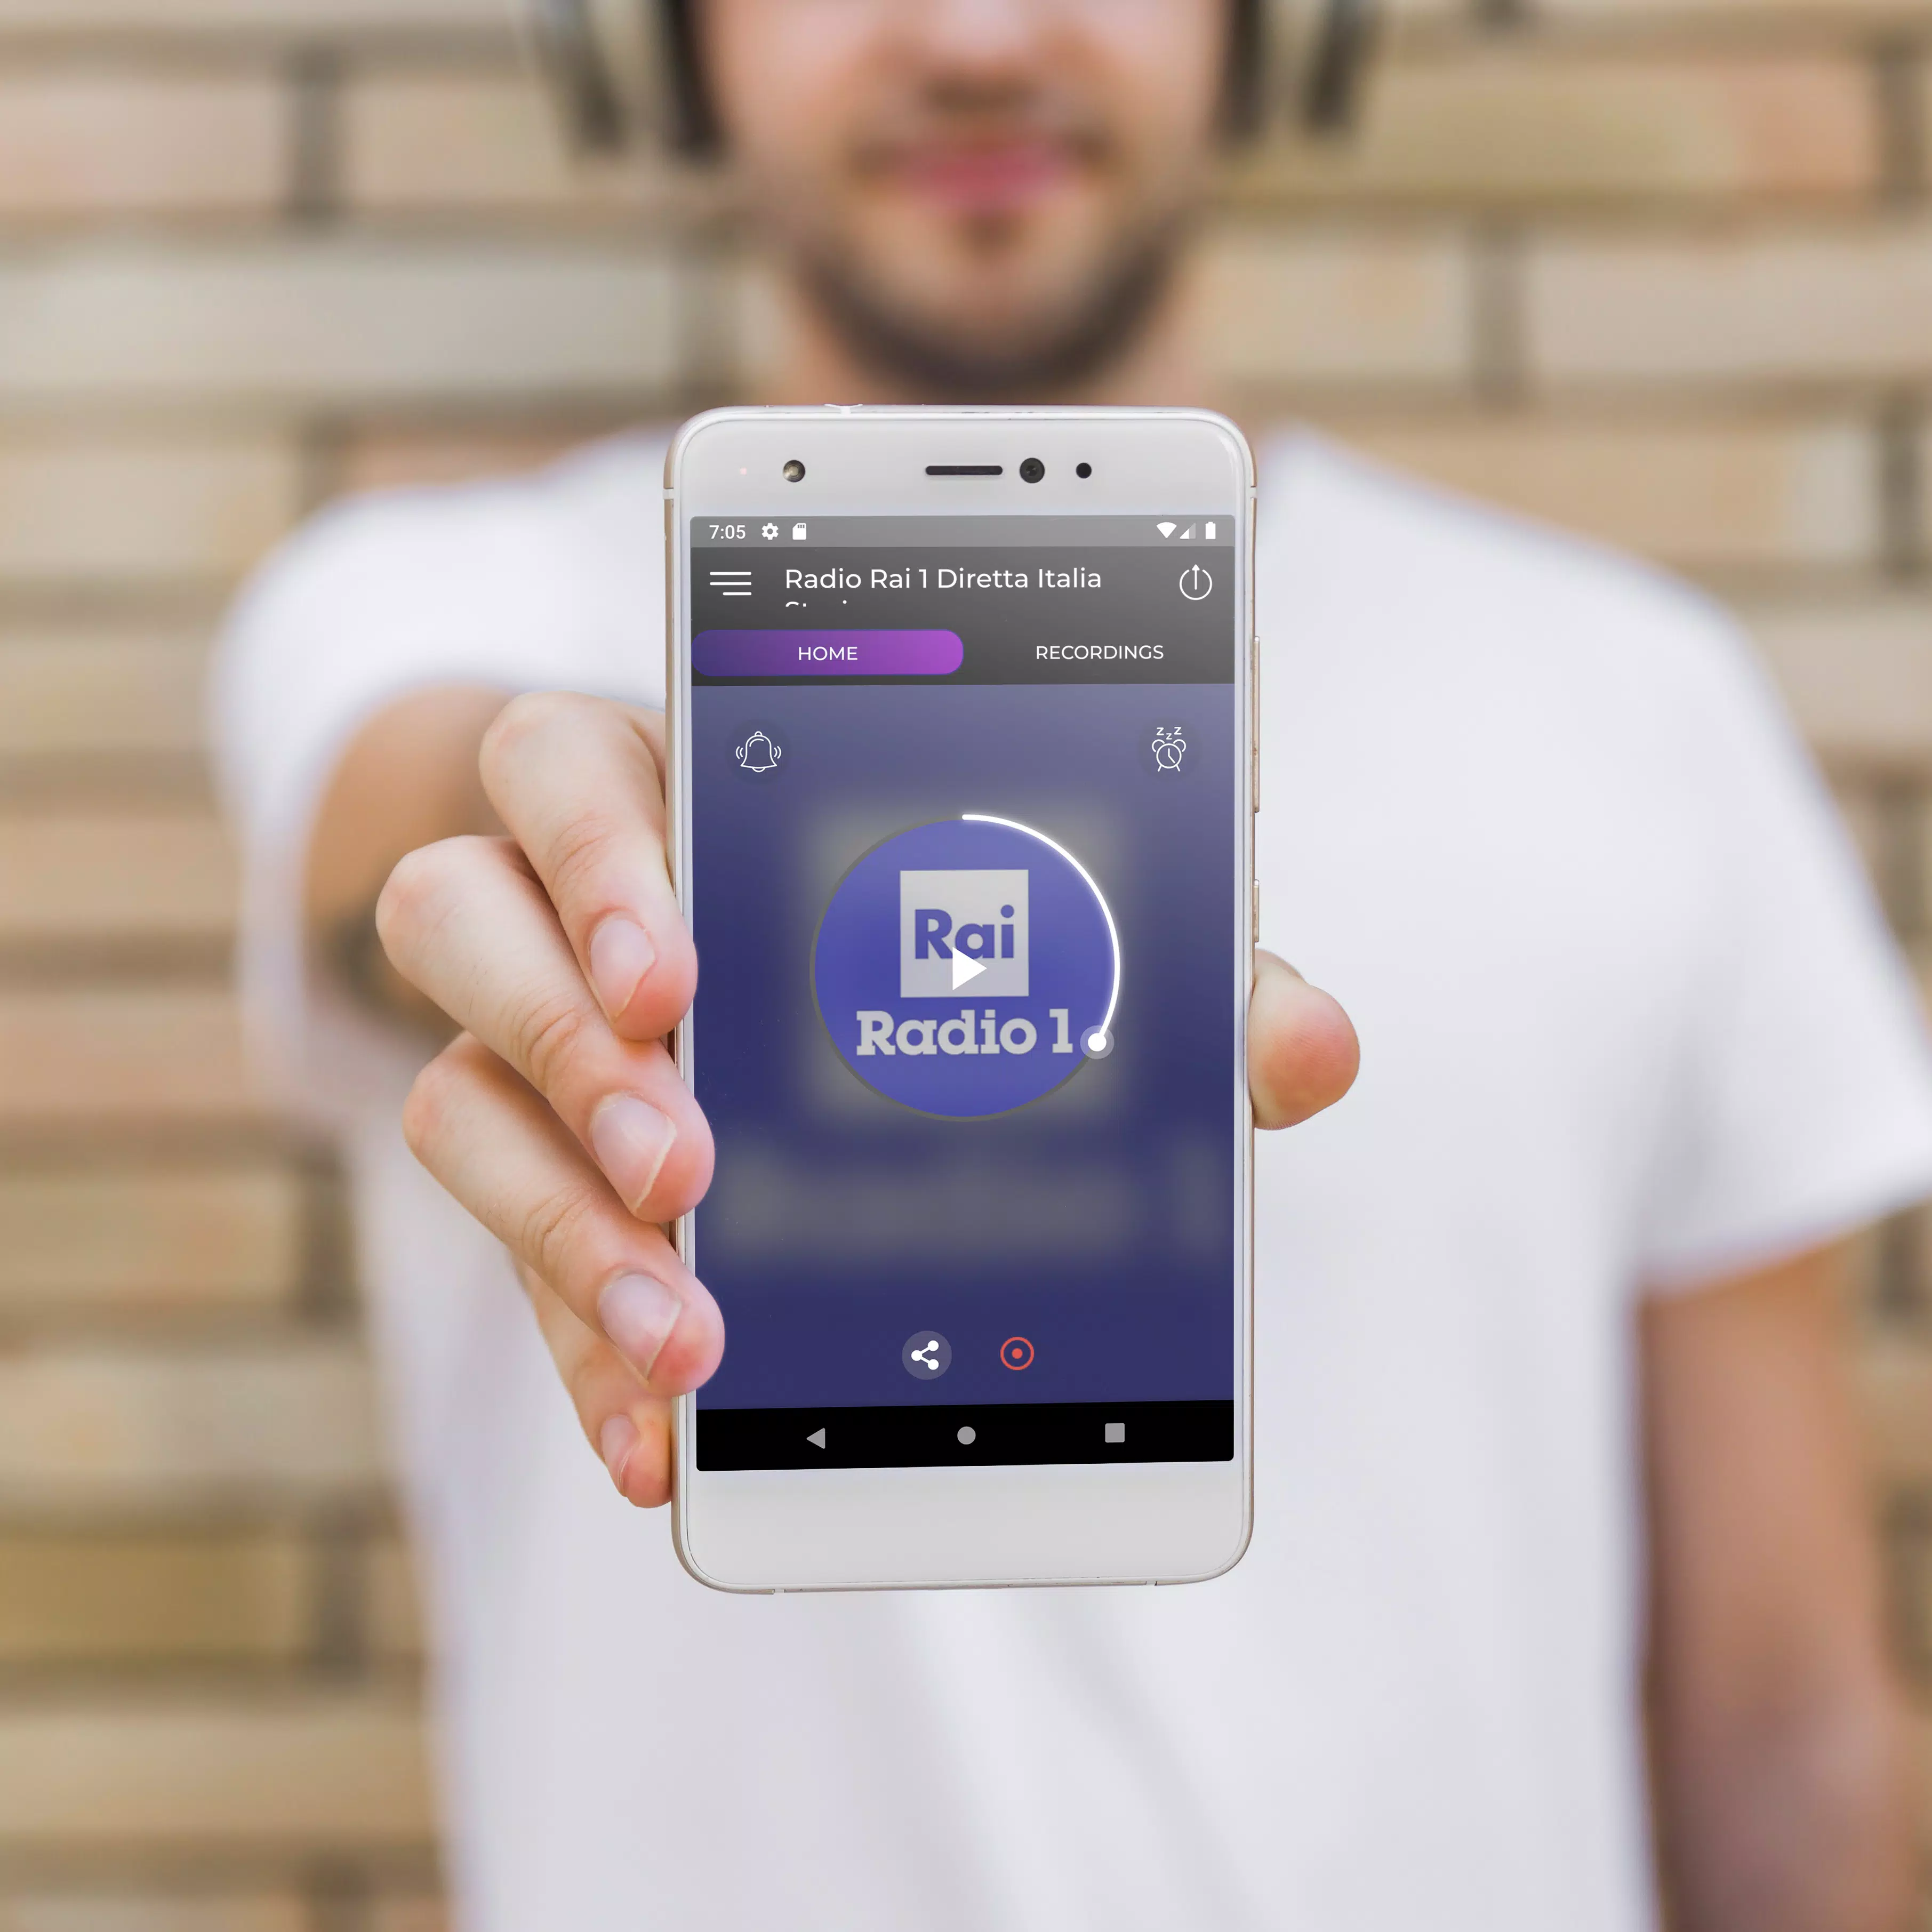 Radio Rai 1 Diretta Italia App APK for Android Download